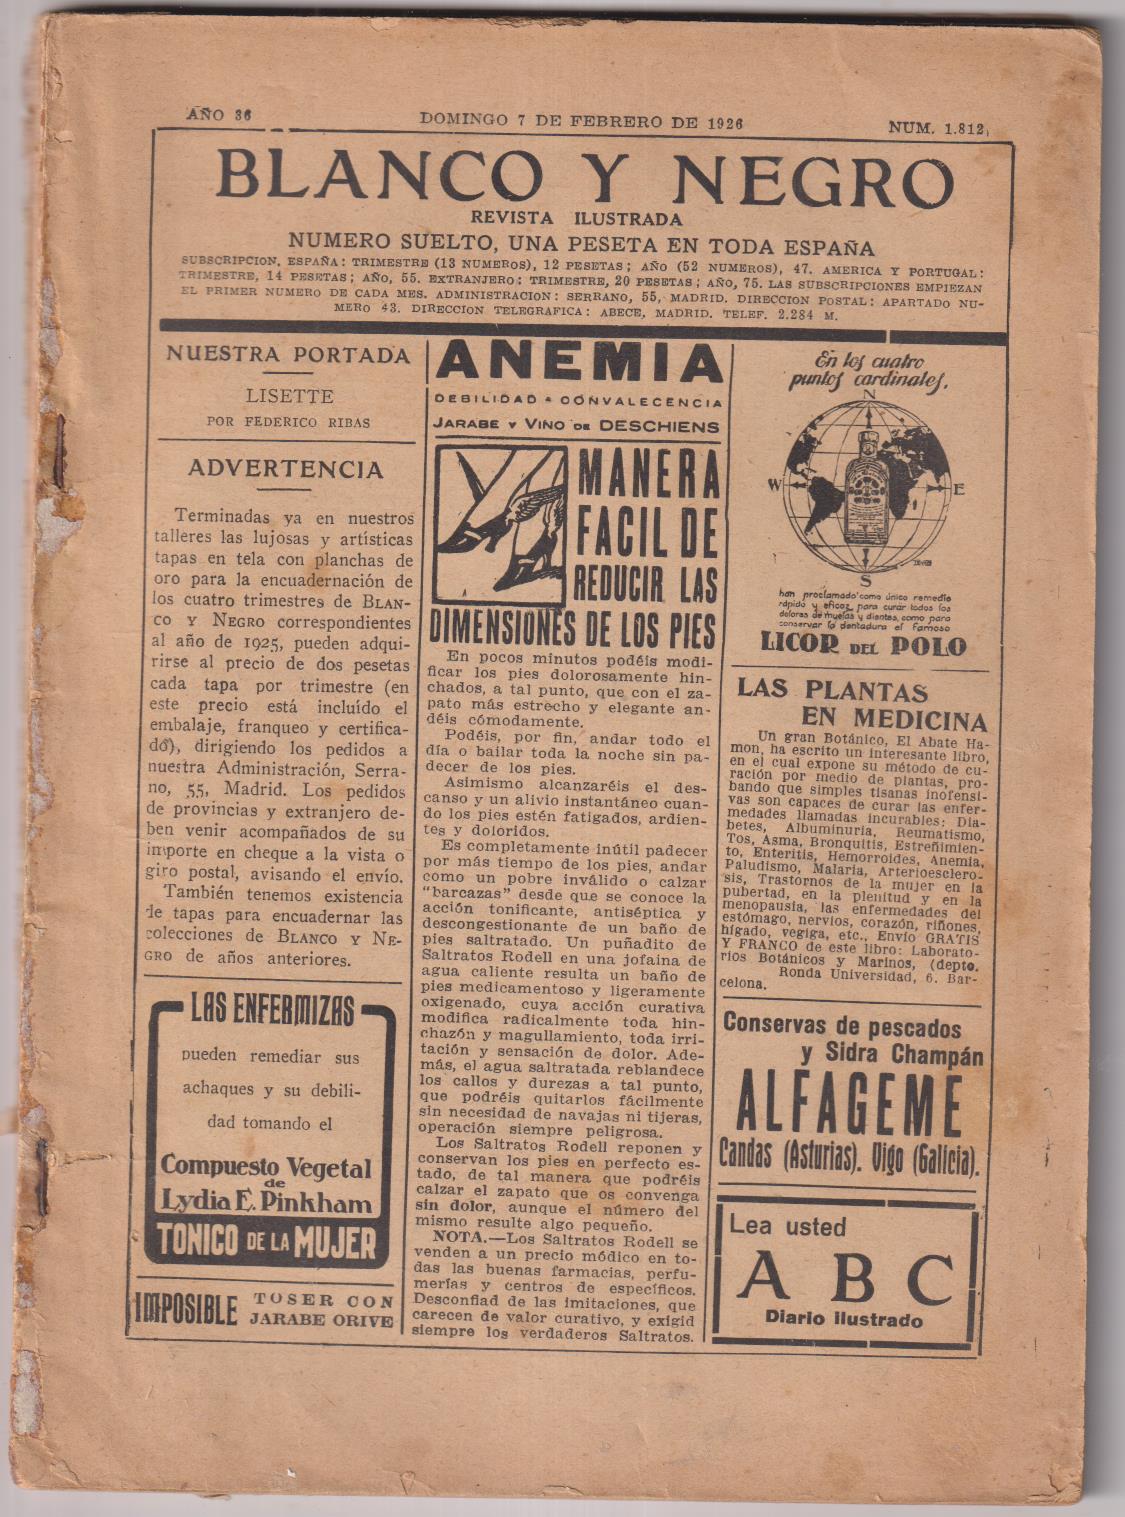 Blanco y Negro nº 1812. Madrid 7 de Febrero de 1926